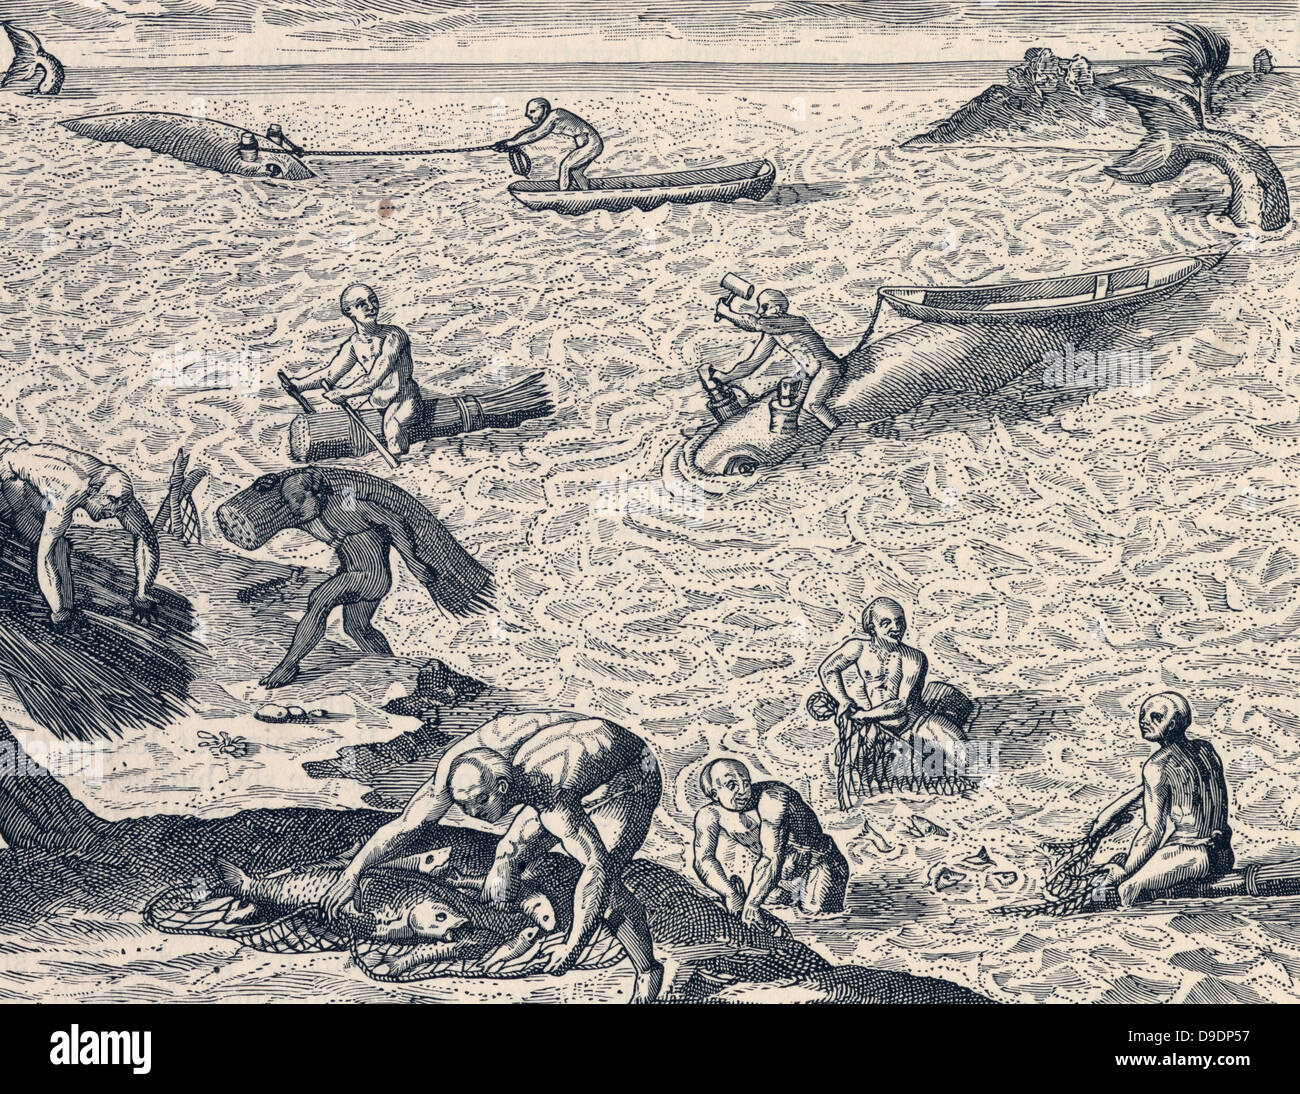 Karibischen Inder Walfang.  Nach dem frühen 17. Jahrhundert Kupferstich. Stockfoto